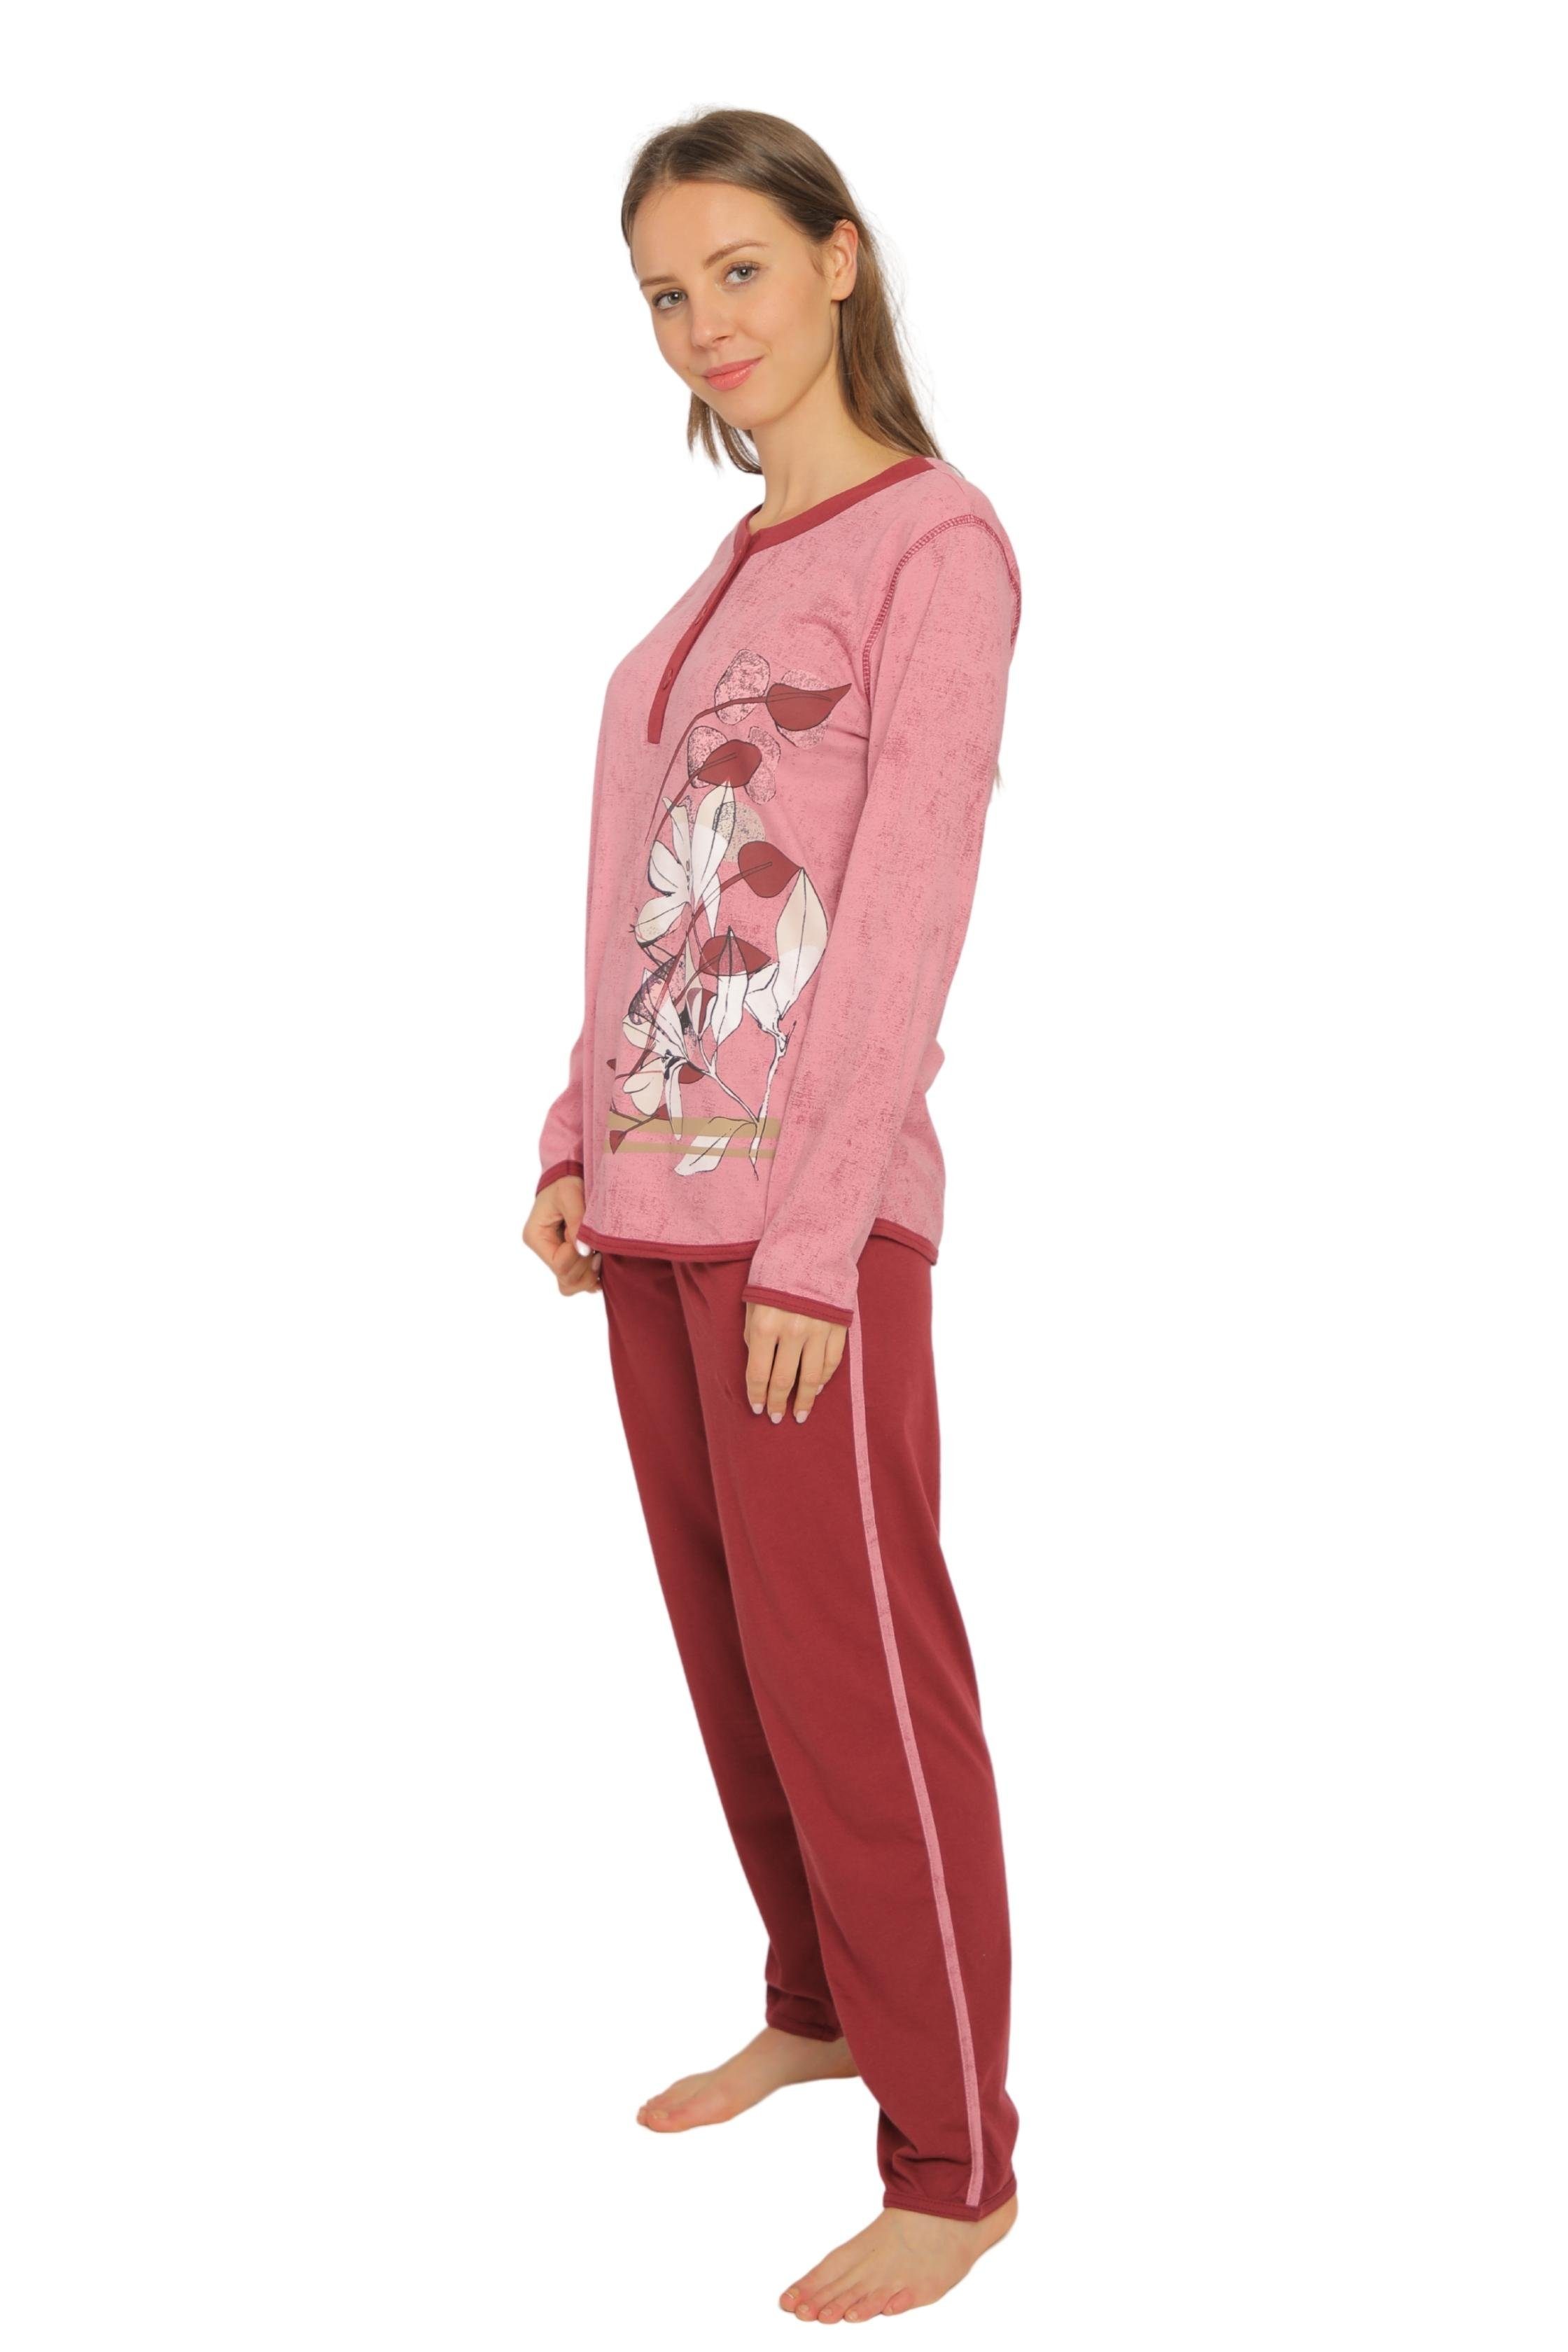 Consult-Tex Pyjama Damen Pyjama, Schlafanzug, Homewear Set DF419 (Packung)  aus reiner Baumwolle-Jersey Qualität | Pyjama-Sets